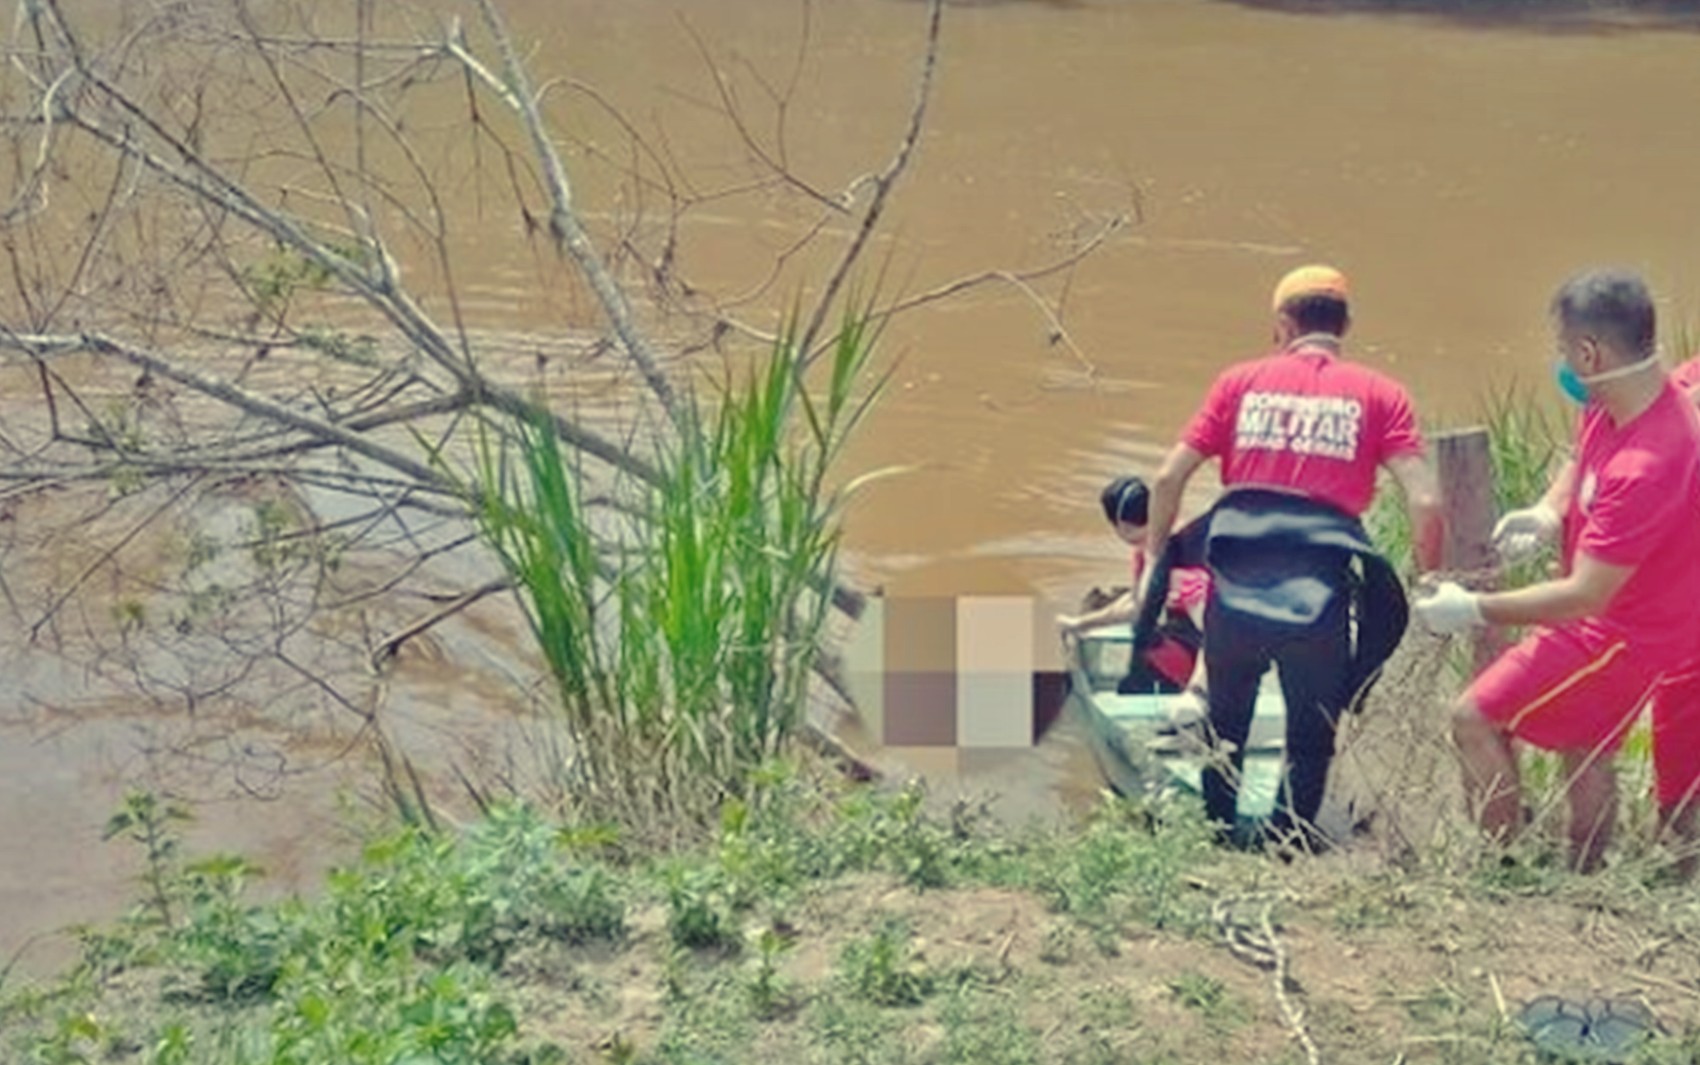 Corpo de homem é encontrado boiando em estágio avançado de decomposição em rio de Lavras, MG